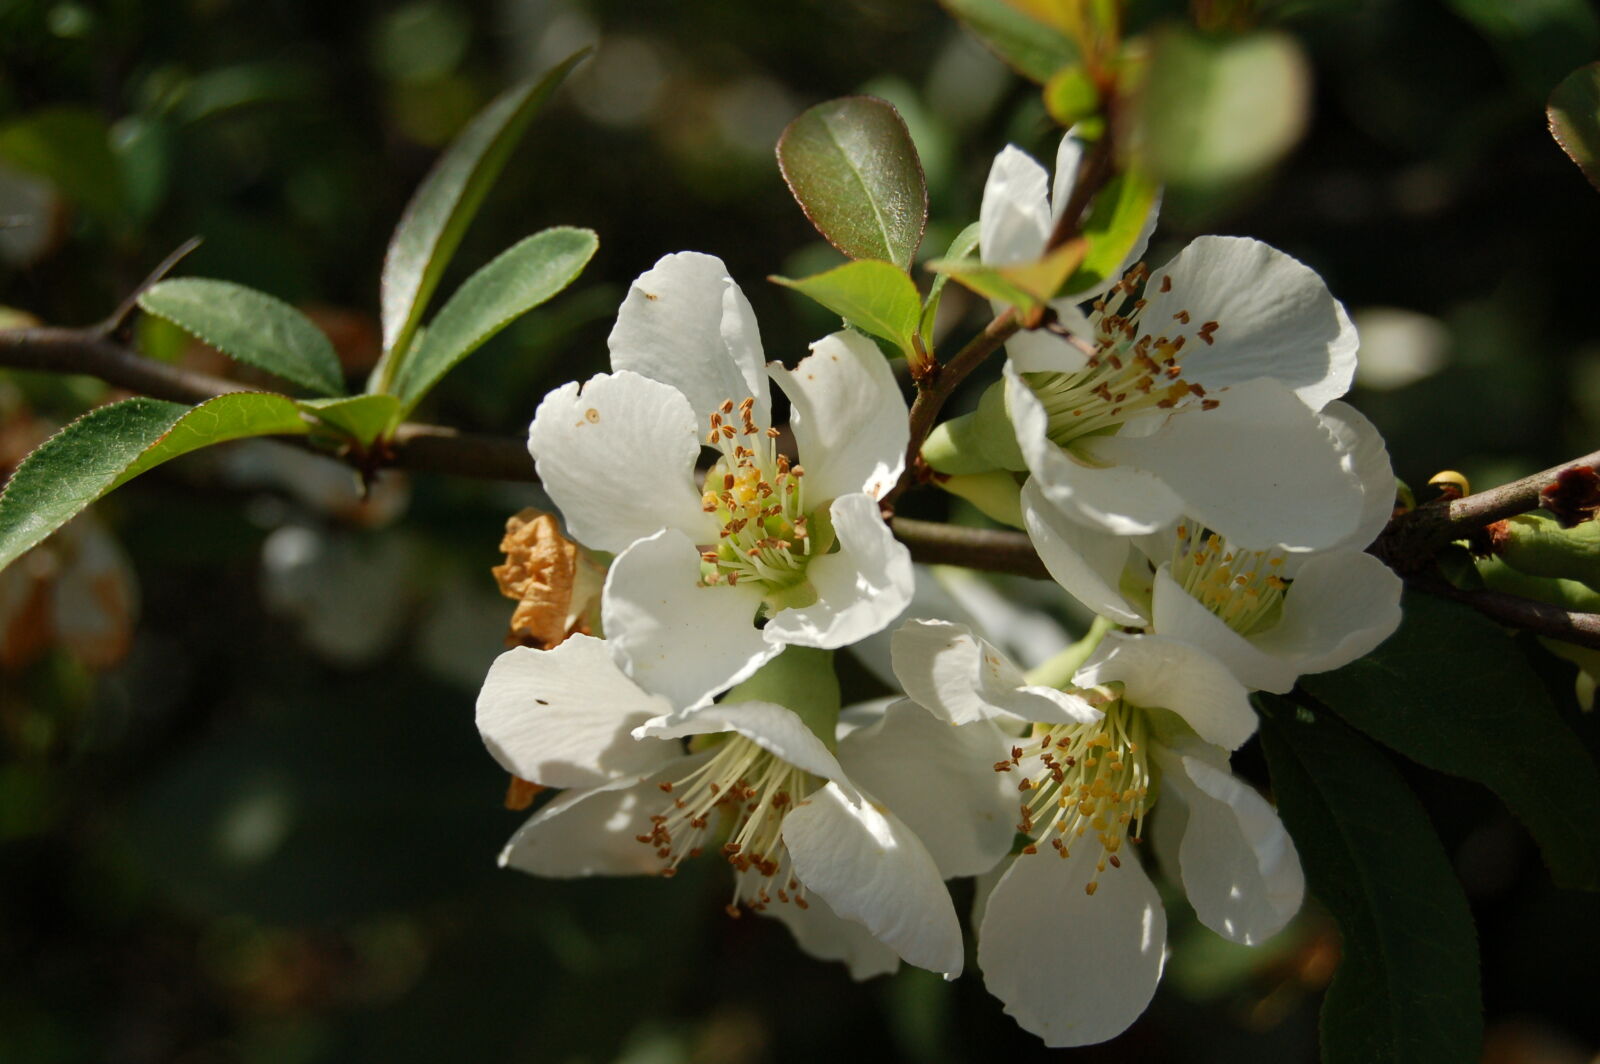 Nikon D50 + AF-S DX Zoom-Nikkor 18-55mm f/3.5-5.6G ED sample photo. Flowering, plant, flowering, tree photography